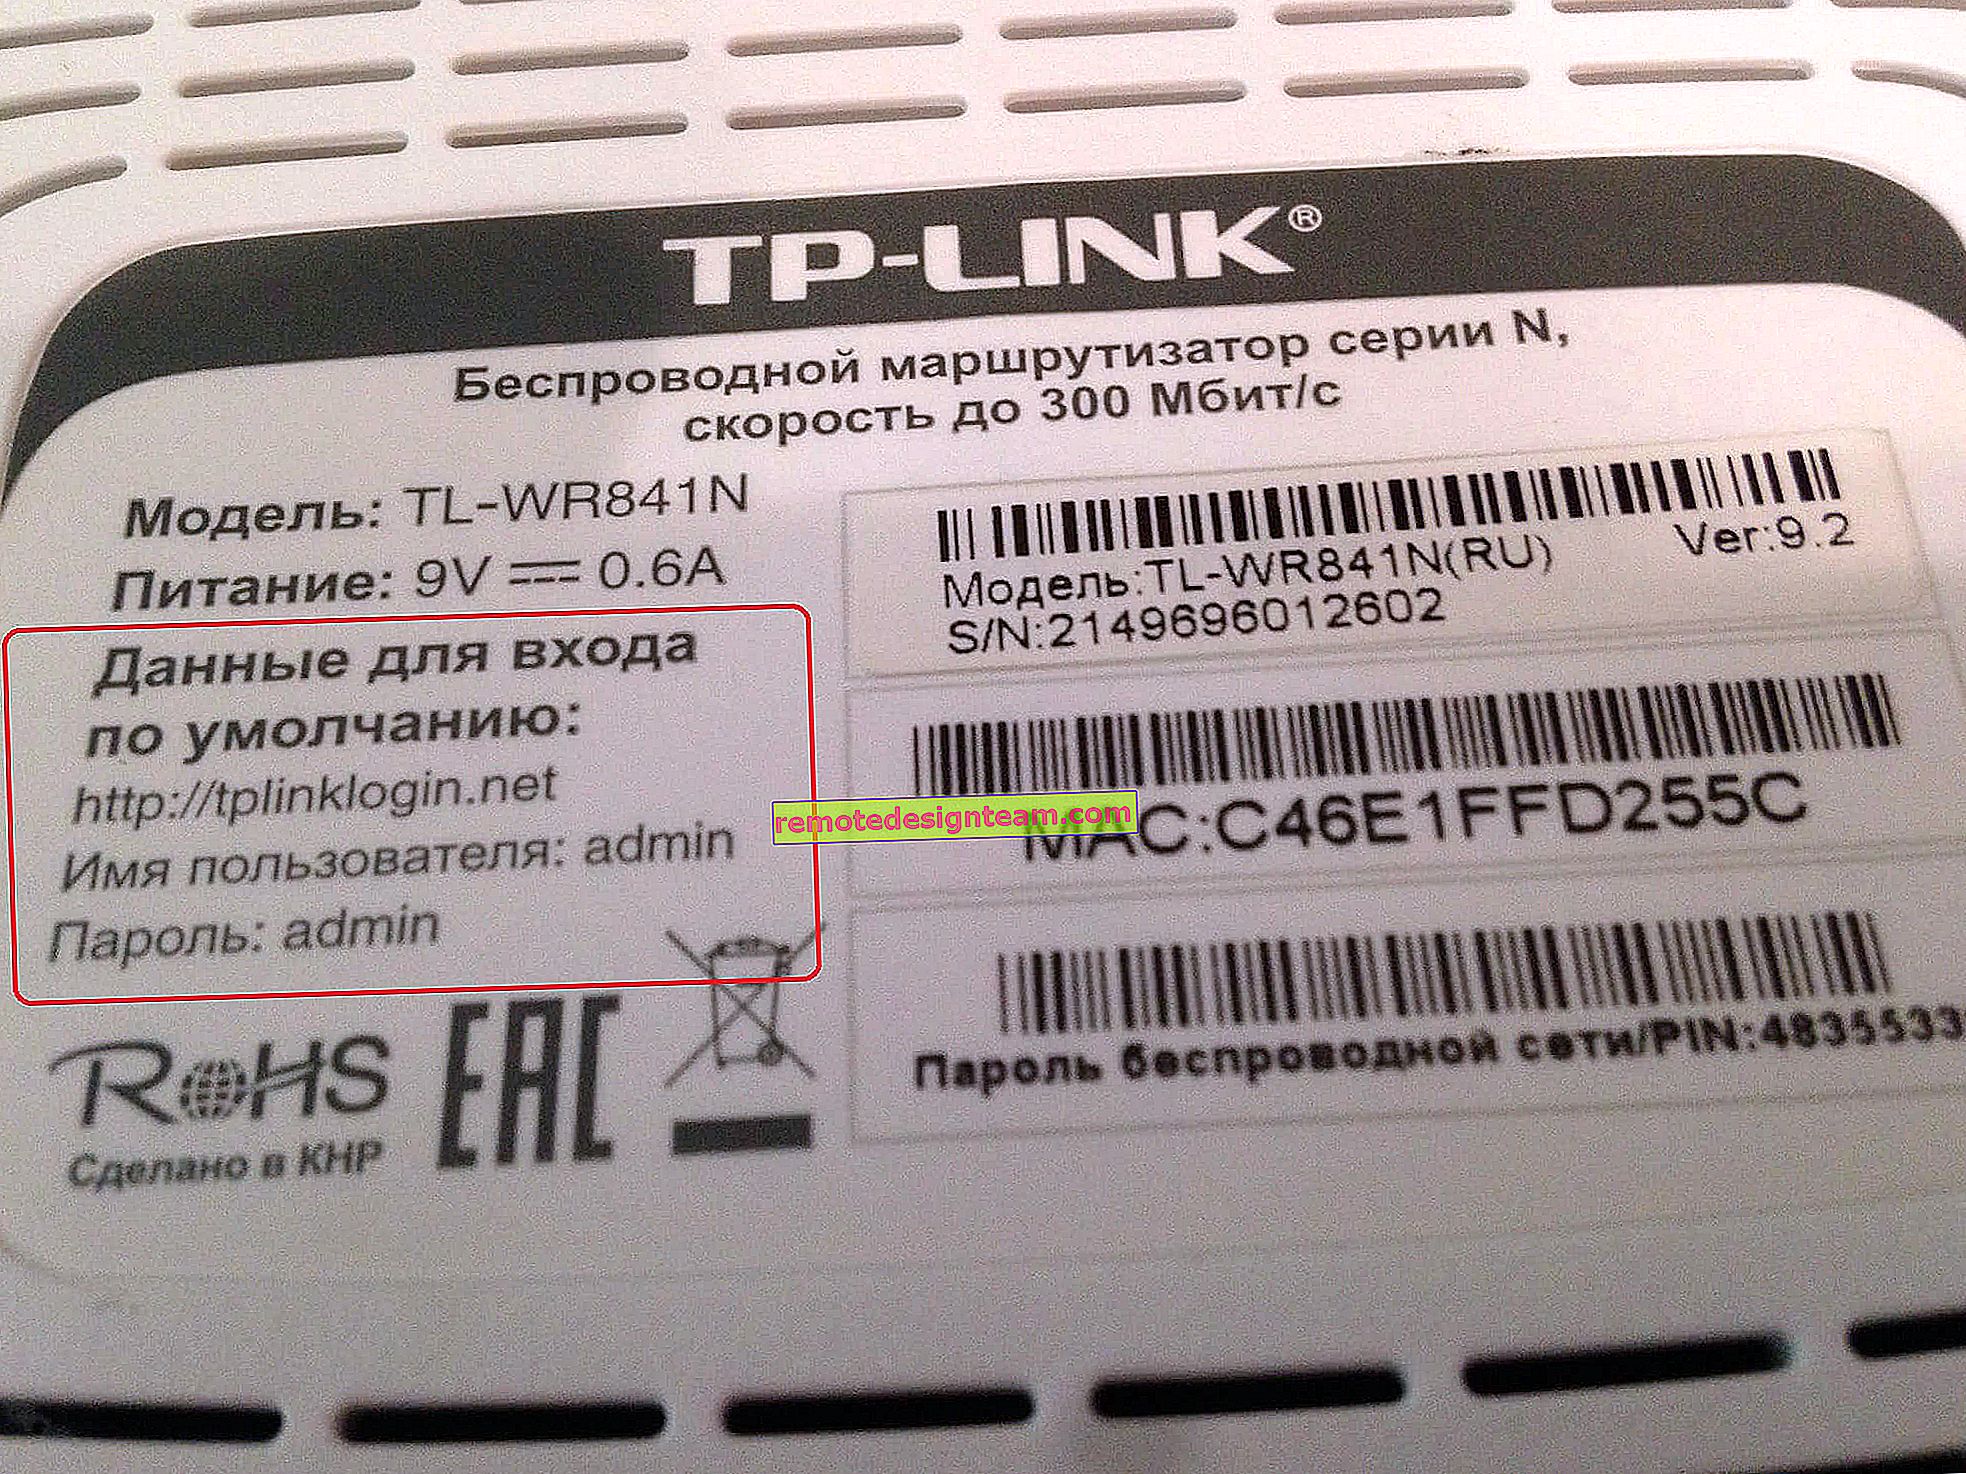 ฉันจะค้นหารหัสผ่านบนเราเตอร์ TP-Link ได้อย่างไร ค้นหารหัสผ่านจาก Wi-Fi และการตั้งค่า